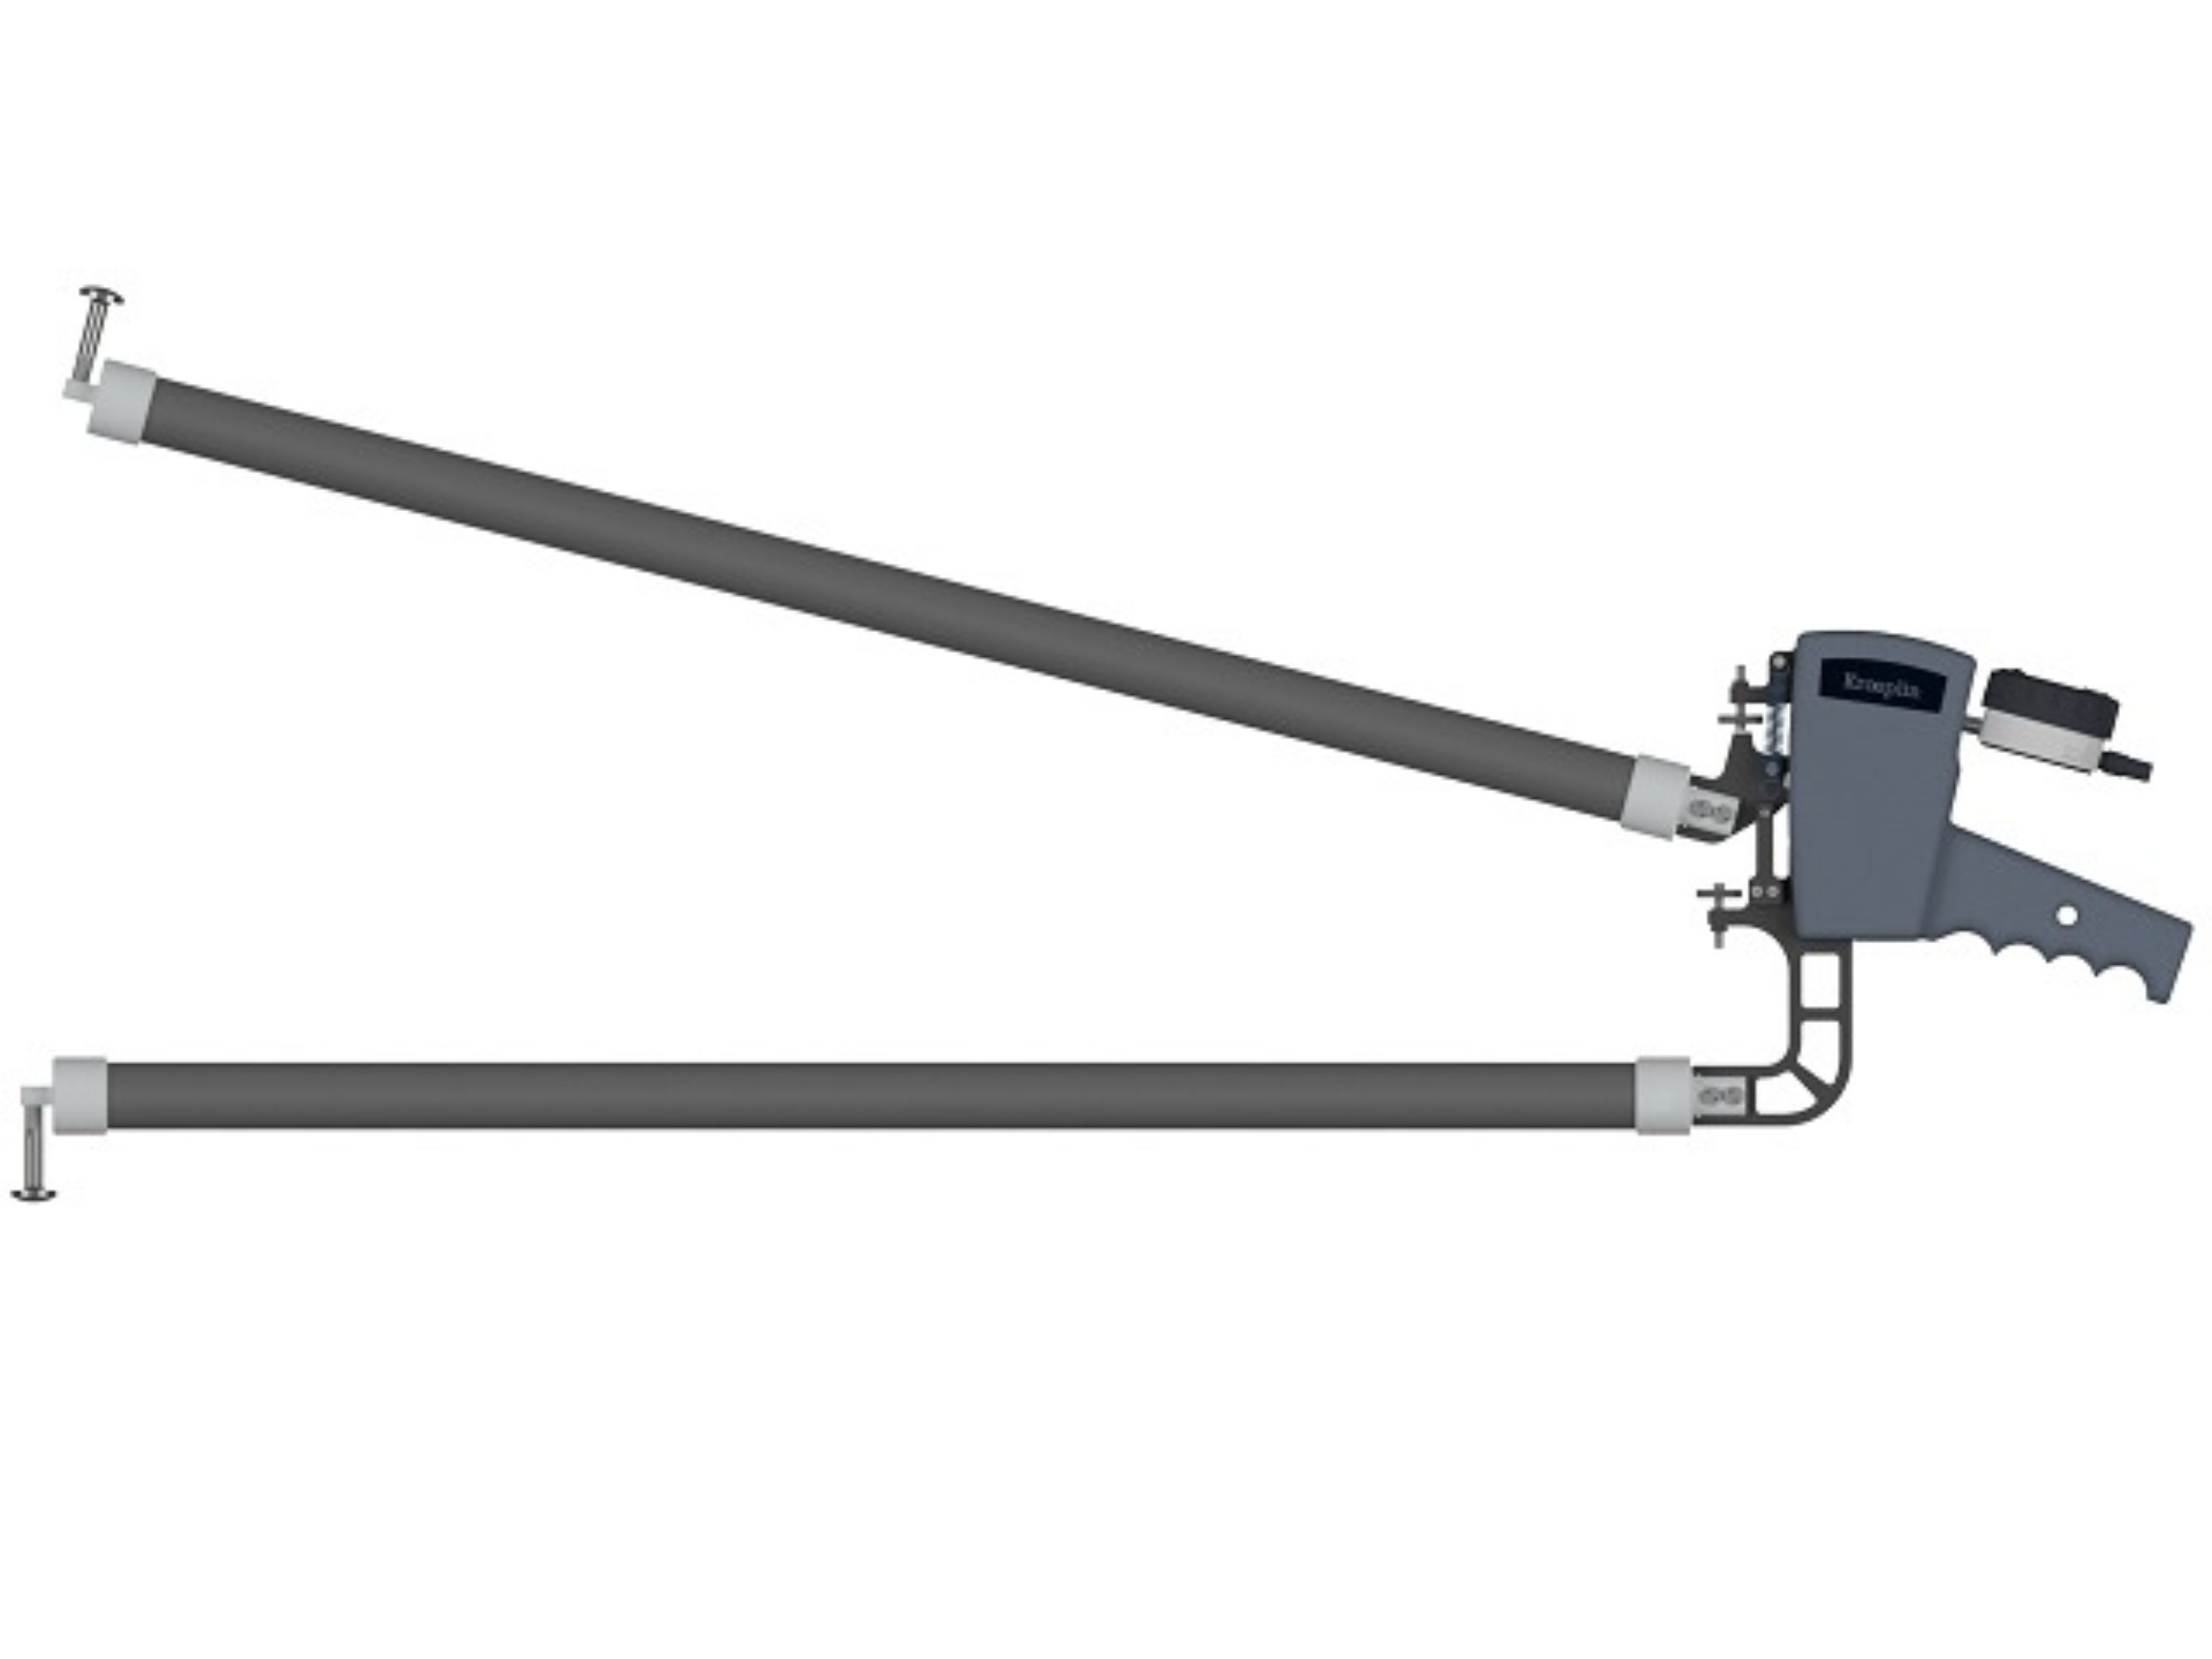 Digital Internal Caliper Gauge 200-400mm, 0.01mm